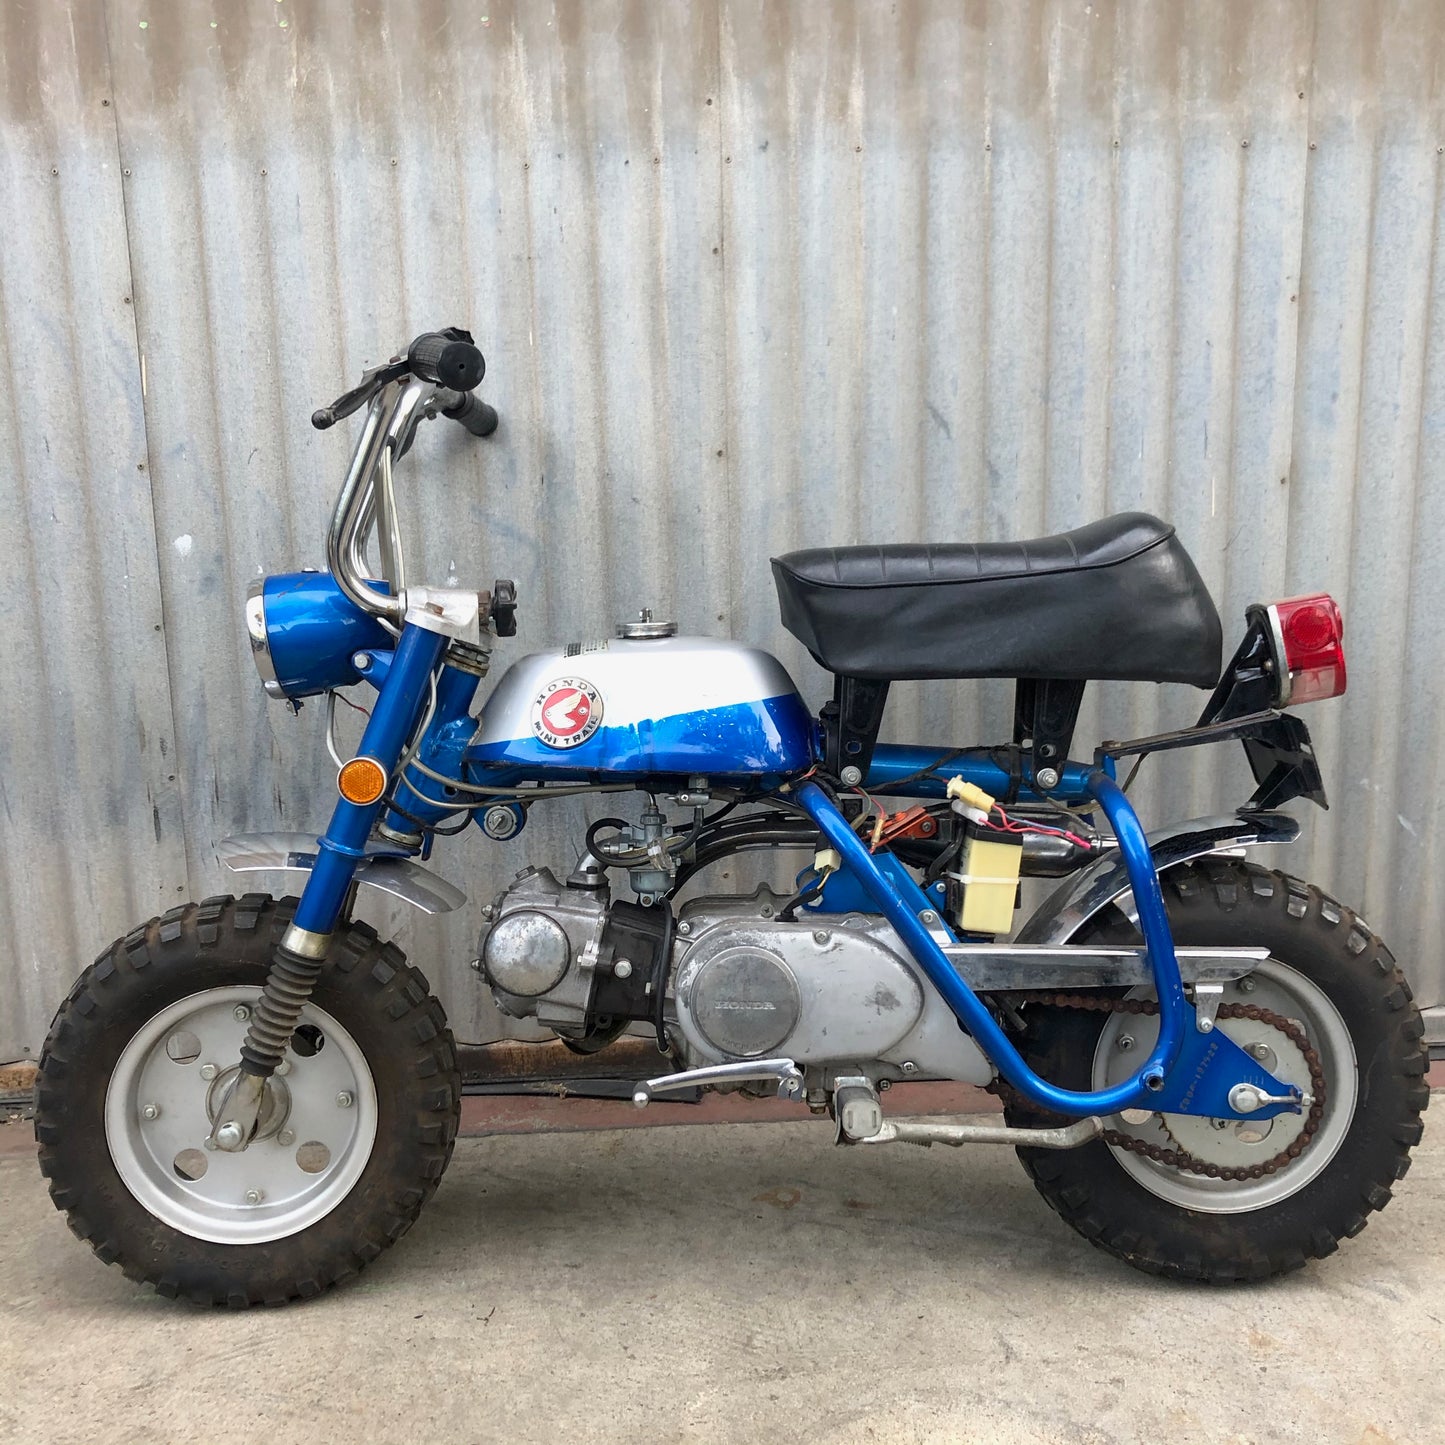 Honda Mini Trail Z50a Monkey Bike Motorcycle